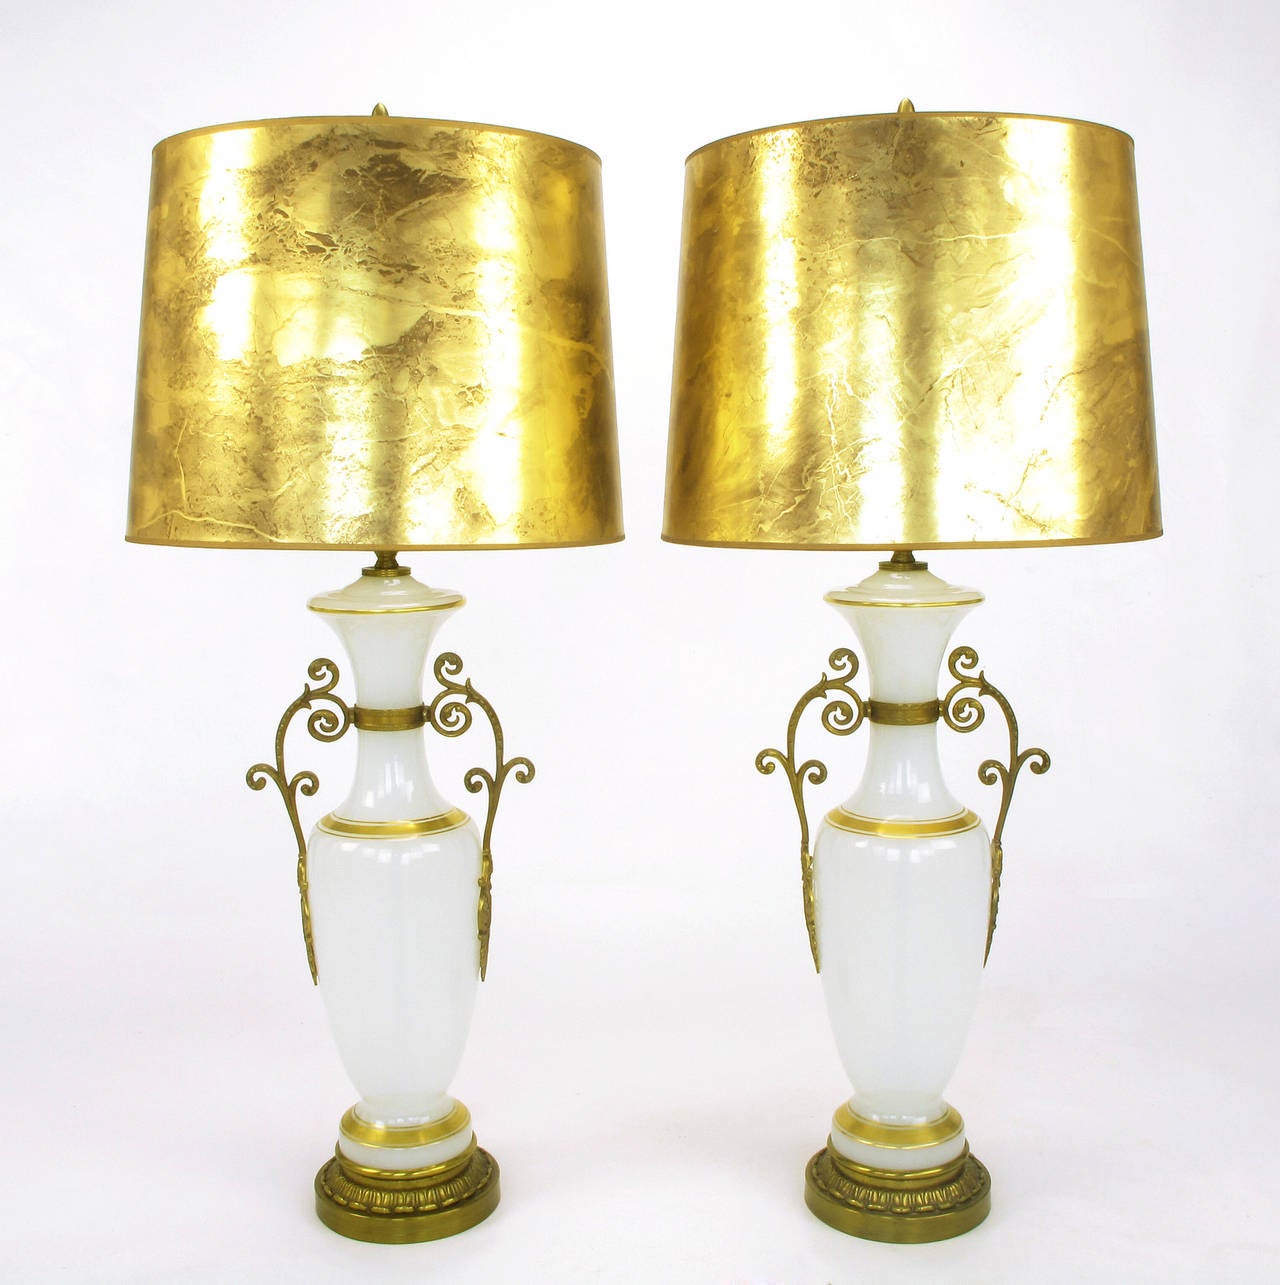 Paar Chapman neoklassischen weißen Milchglas Vase geformt Tischlampen mit vergoldeten Streifen. Filigrane Messinggriffe und Sockel aus Messingguss, Messingstiel und Doppelfassung. Verkauft ohne Schirme.